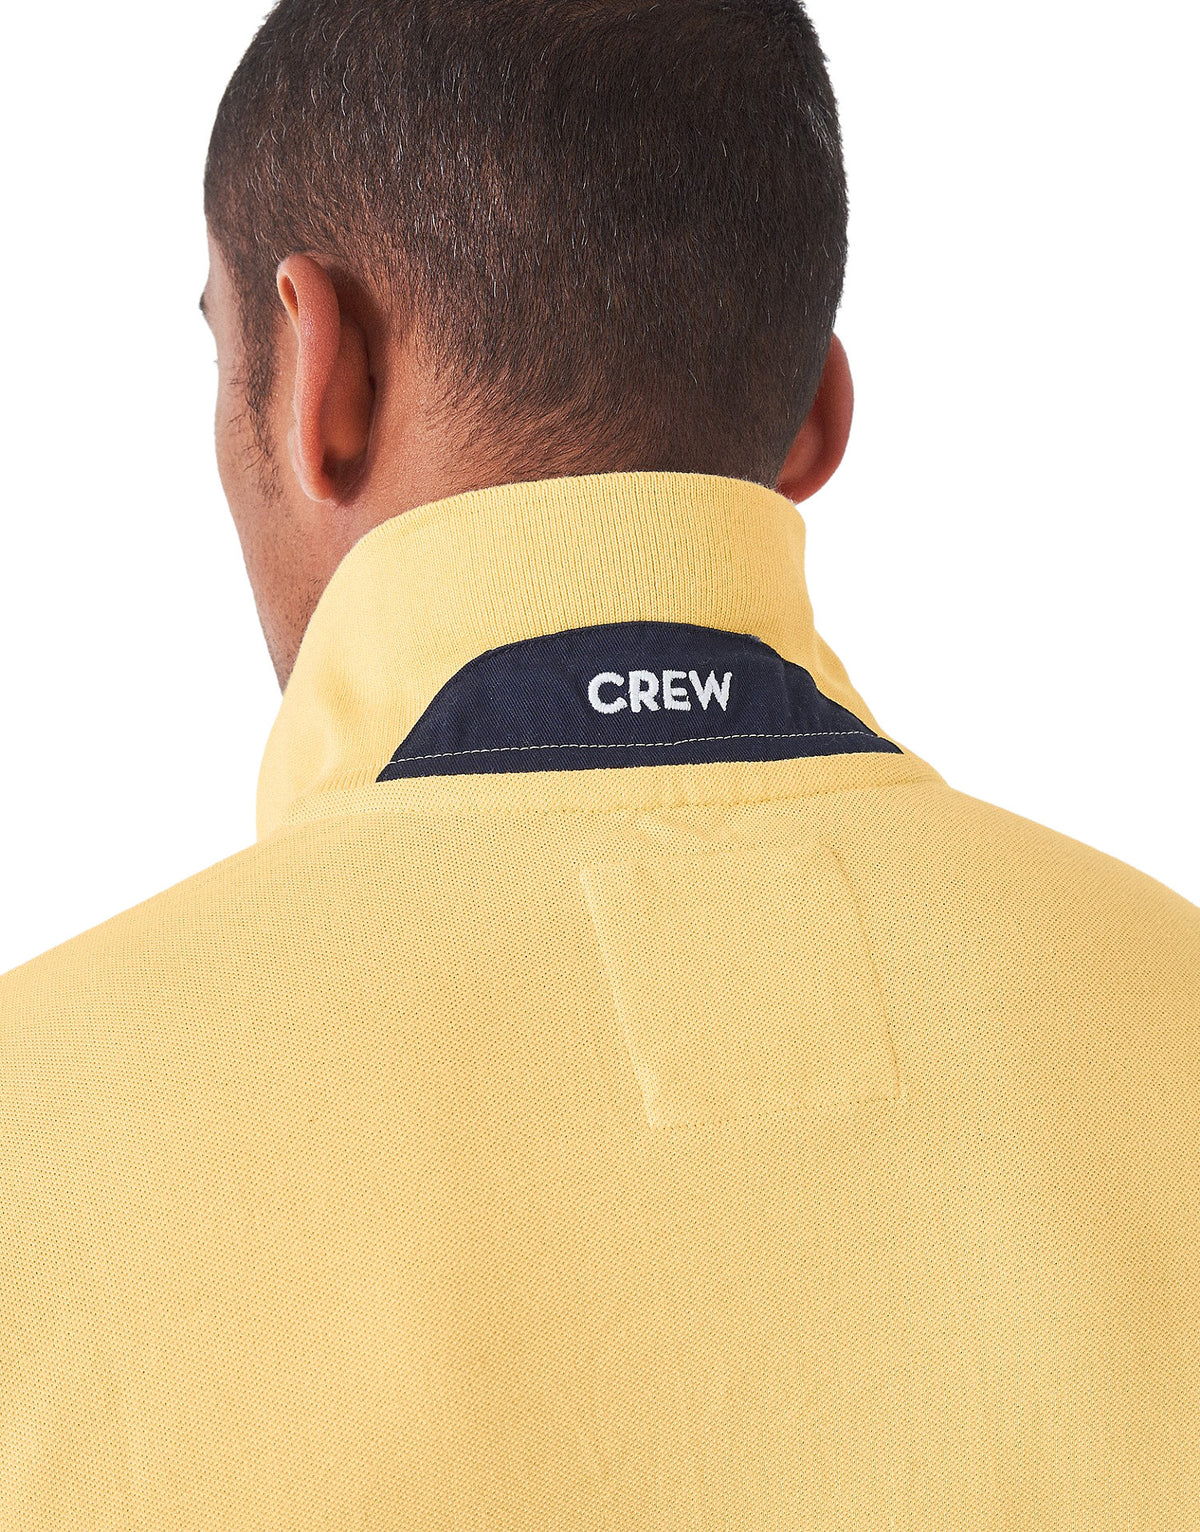 Crew Clothing Mens Pique Polo Shirt 'Classic Pique Polo' - Short Sleeved, 02, Mke002, Golden Haze